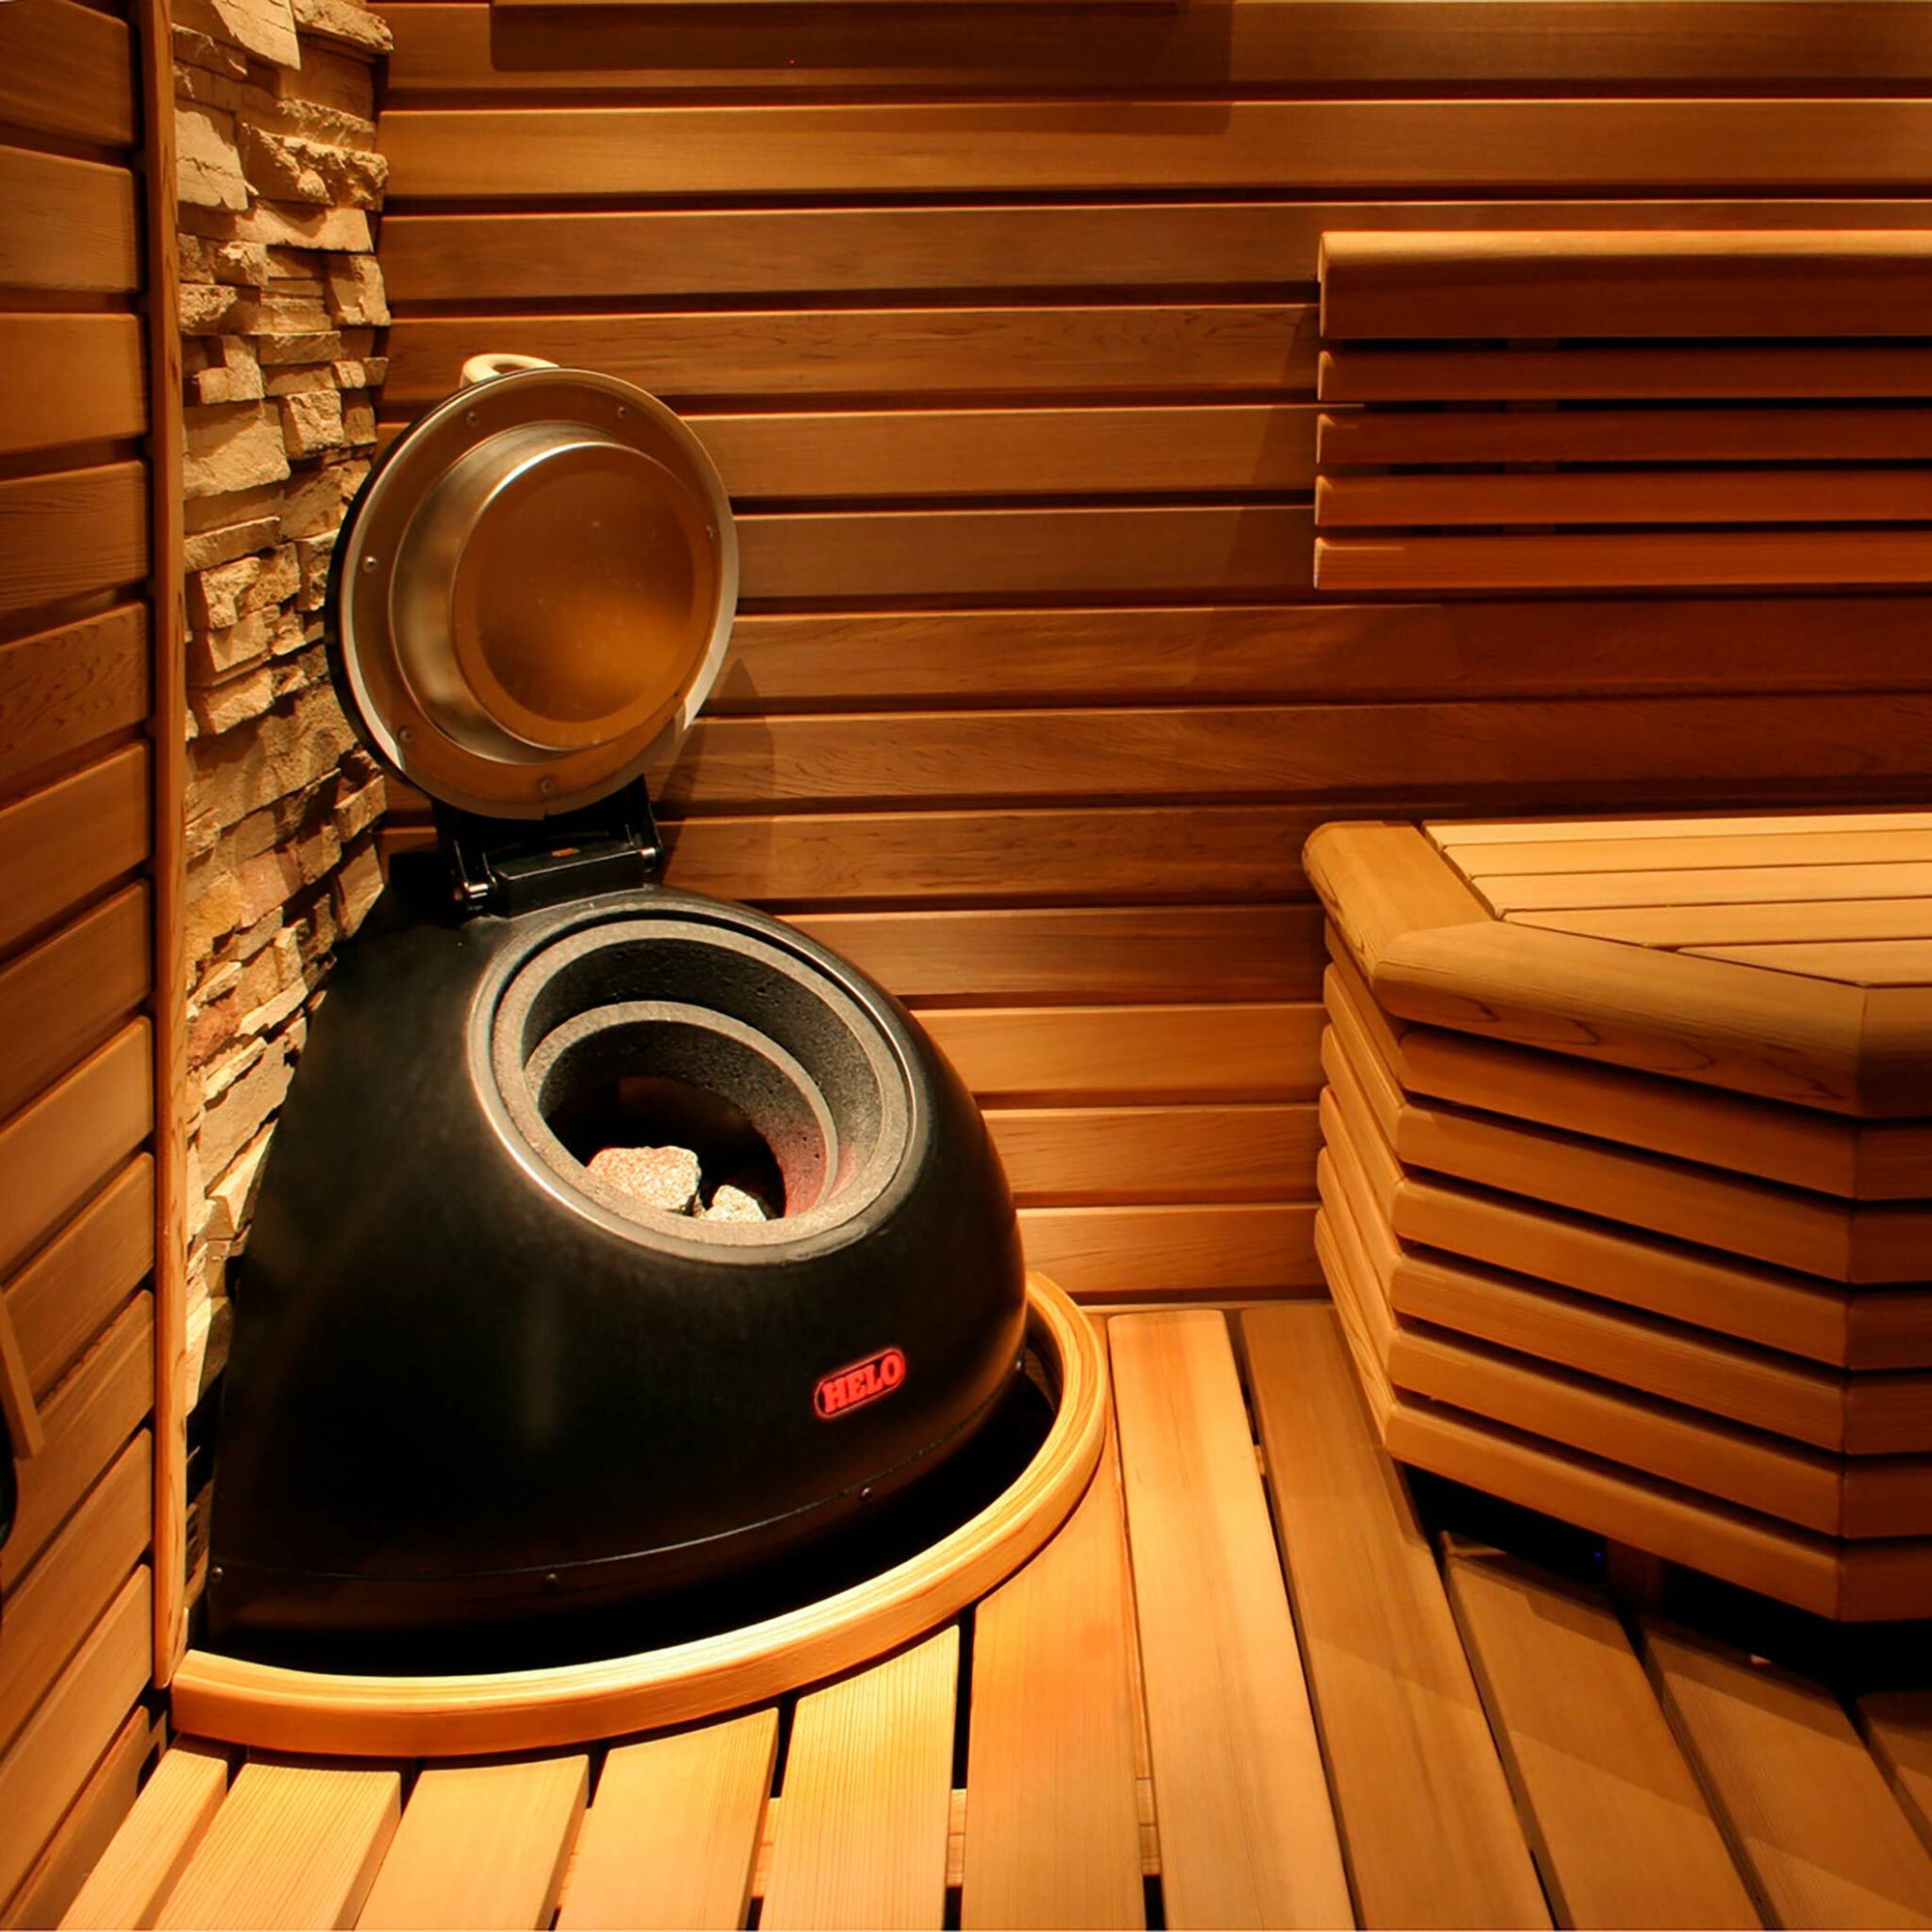 Helo Poêle de sauna électrique Saunatonttu 6, 6,4kW, 7-14m³, commande séparée